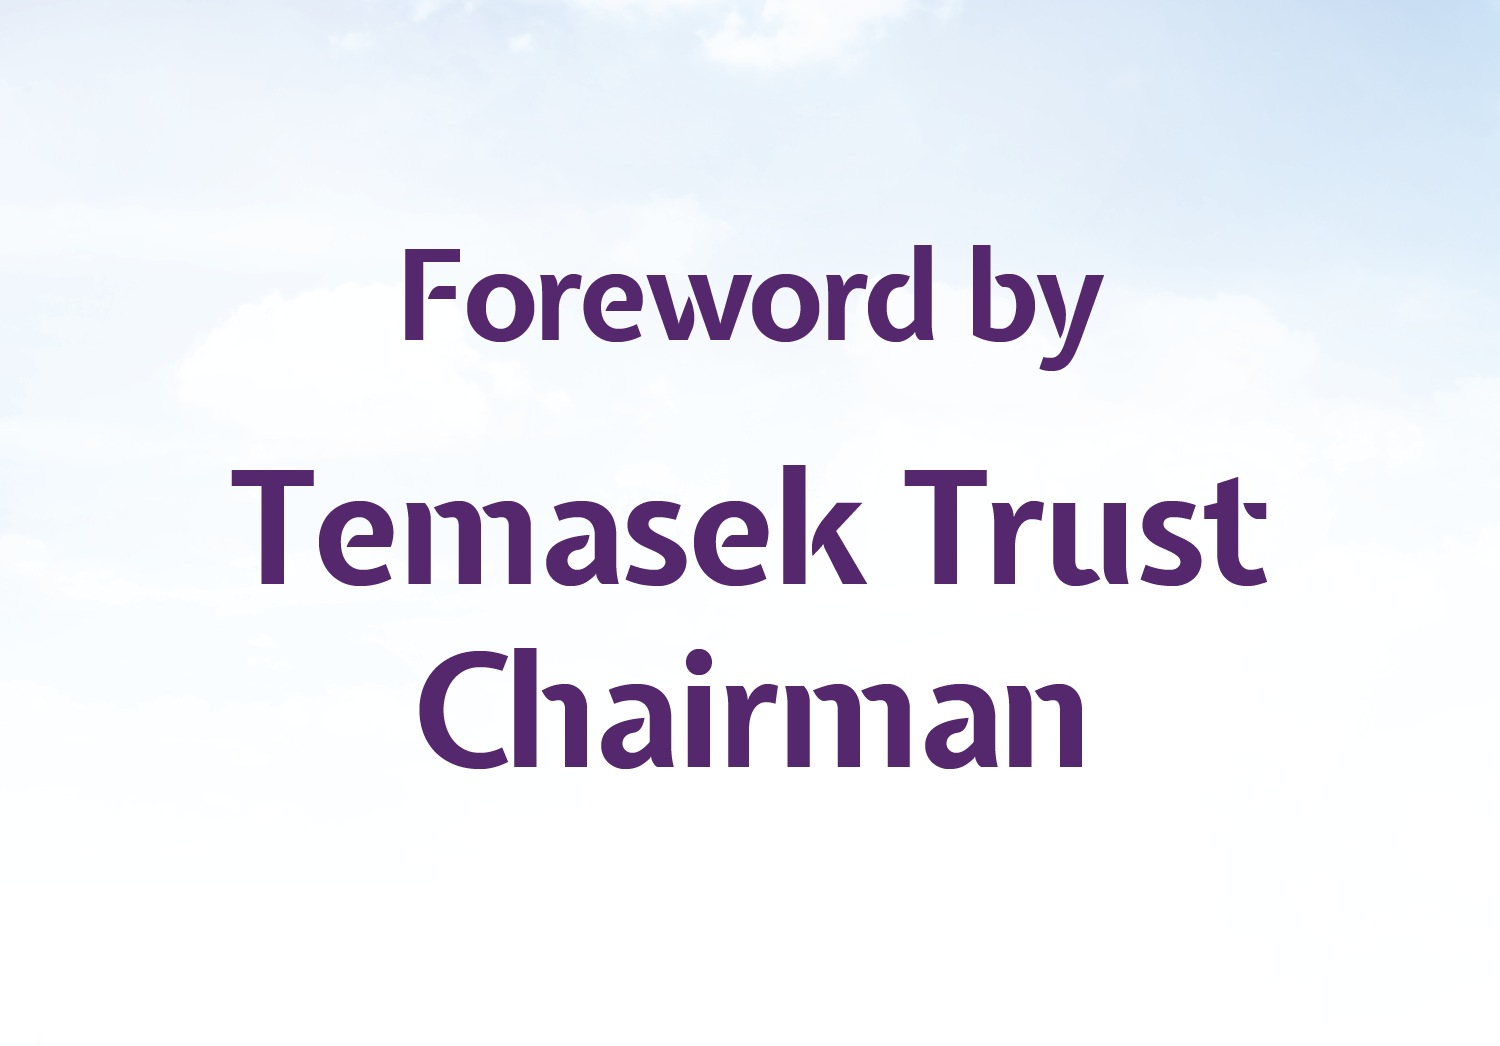 Foreword by Temasek Trust Chairman